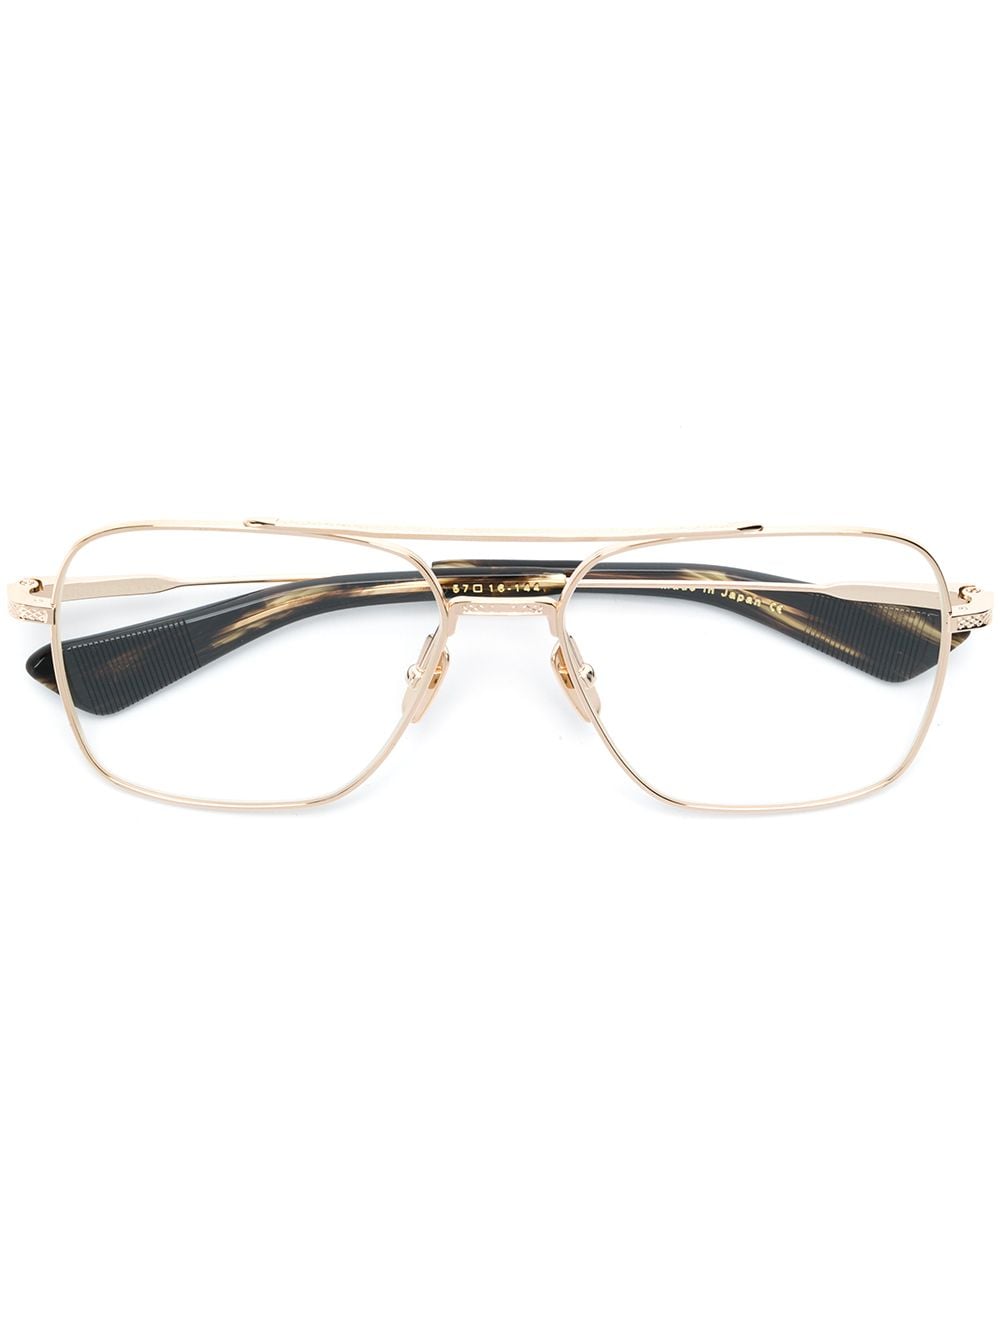 Dita Eyewear Flight Seven glasses - Metallic von Dita Eyewear